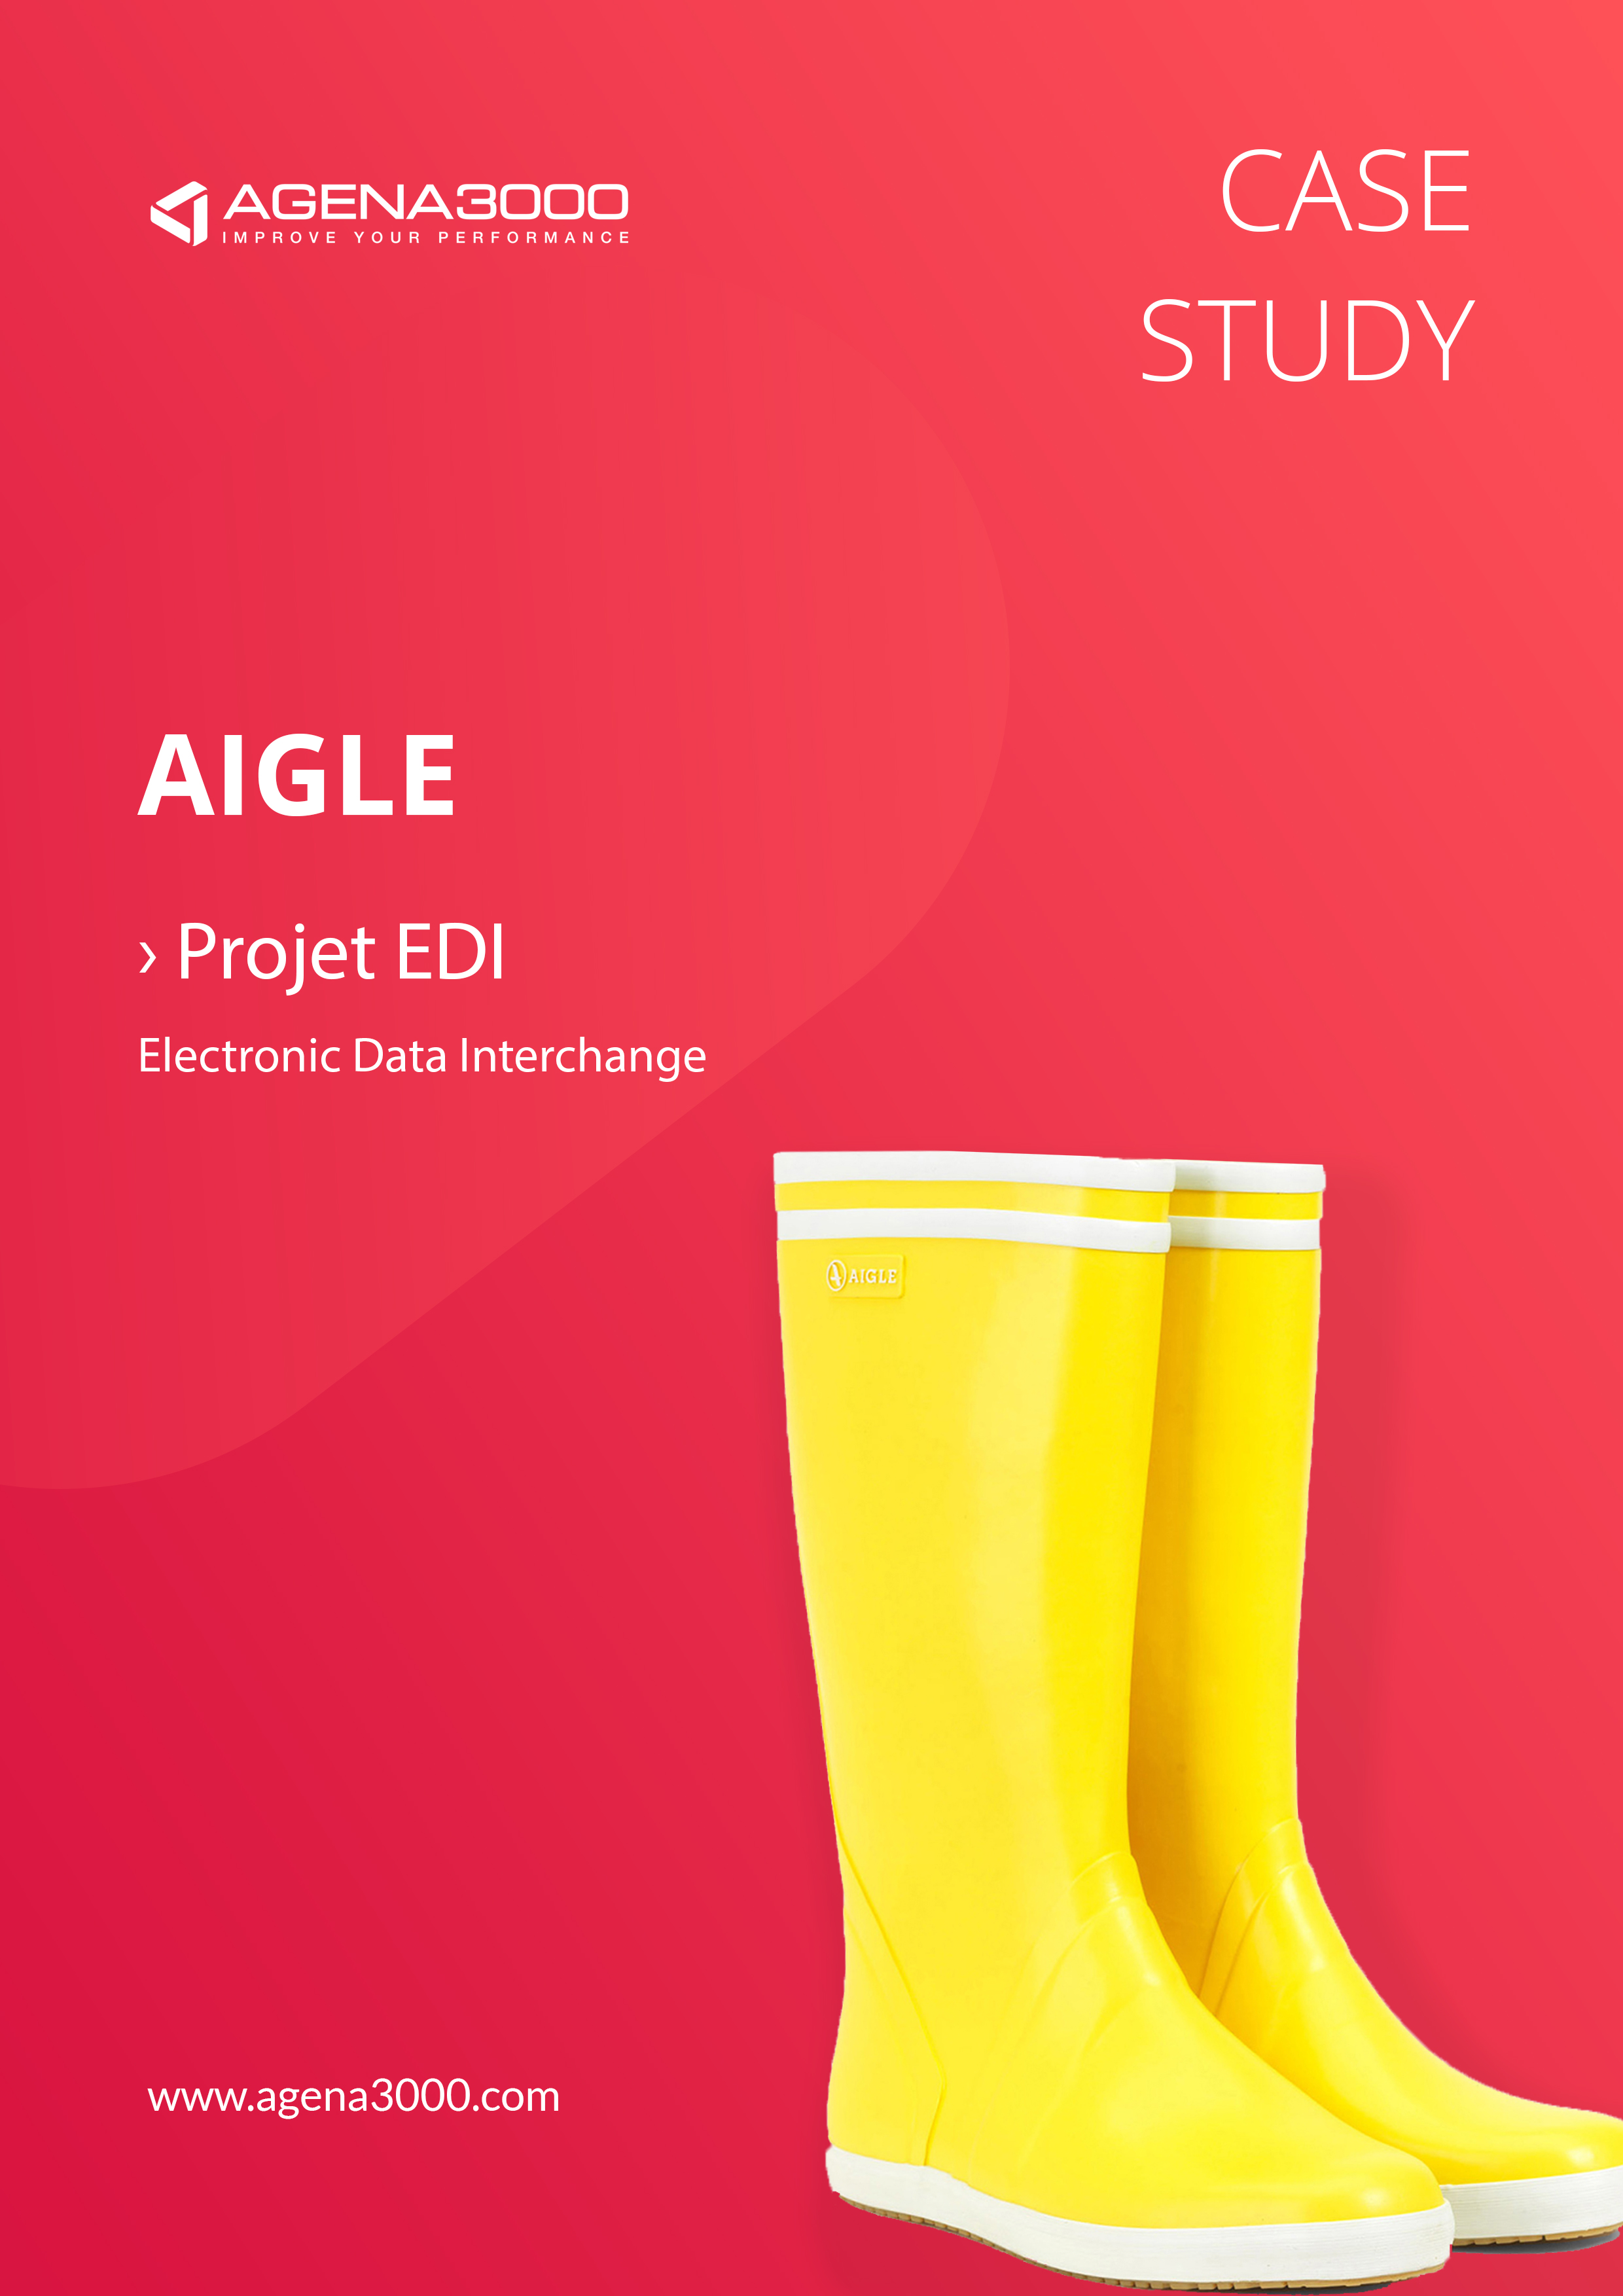 Case study EDI - Aigle